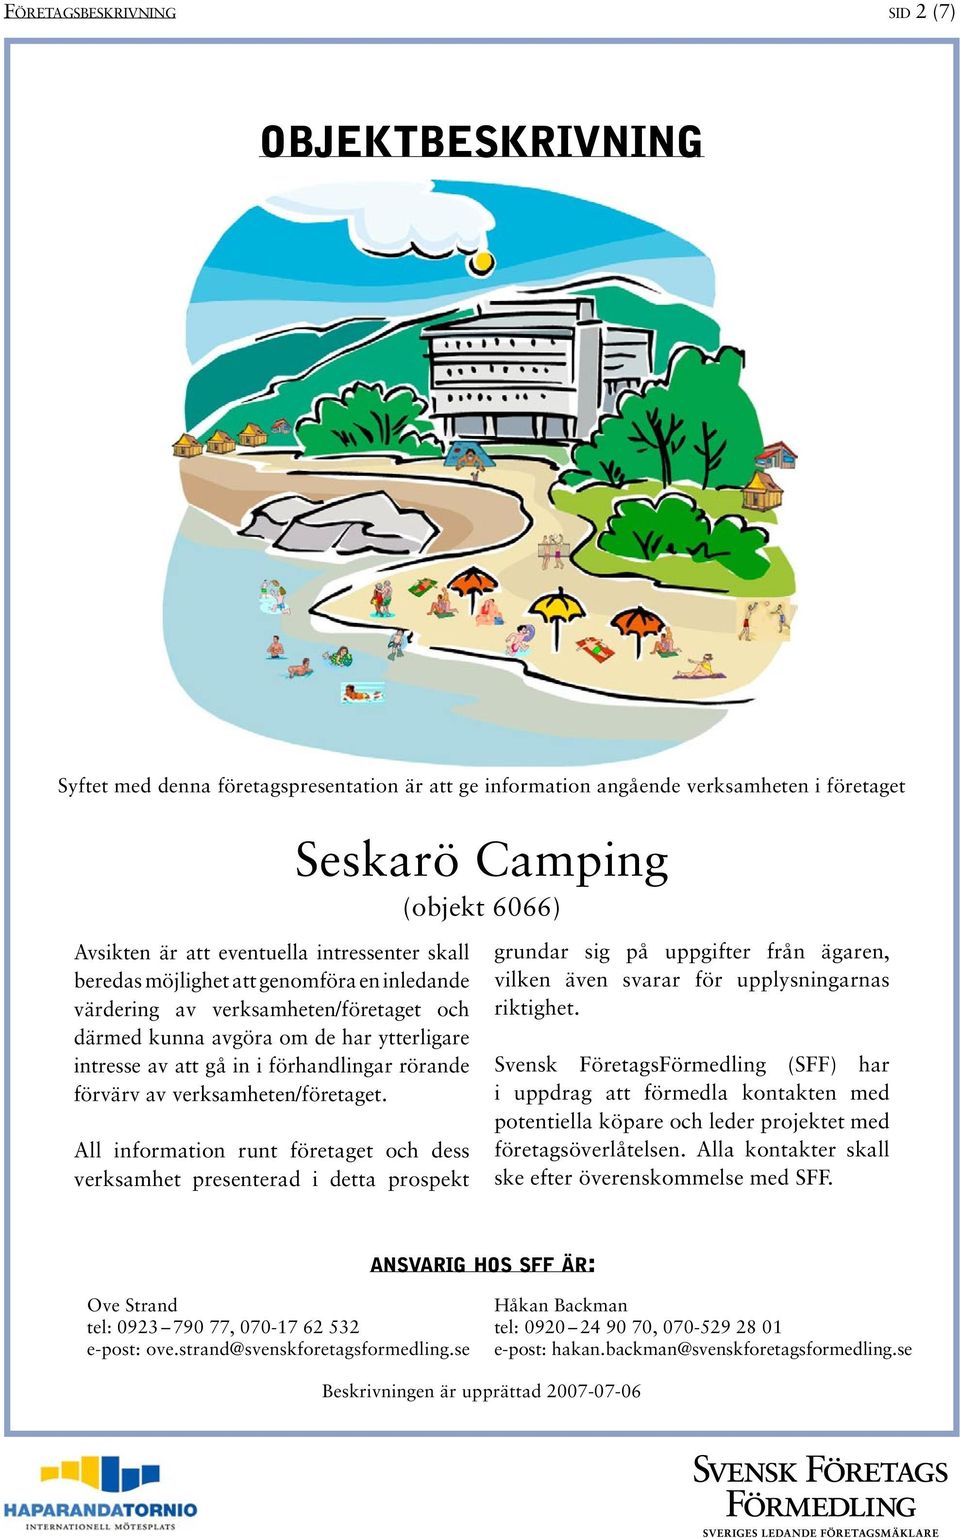 All information runt företaget och dess verksamhet presenterad i detta prospekt Seskarö Camping (objekt 6066) grundar sig på uppgifter från ägaren, vilken även svarar för upplysningarnas riktighet.